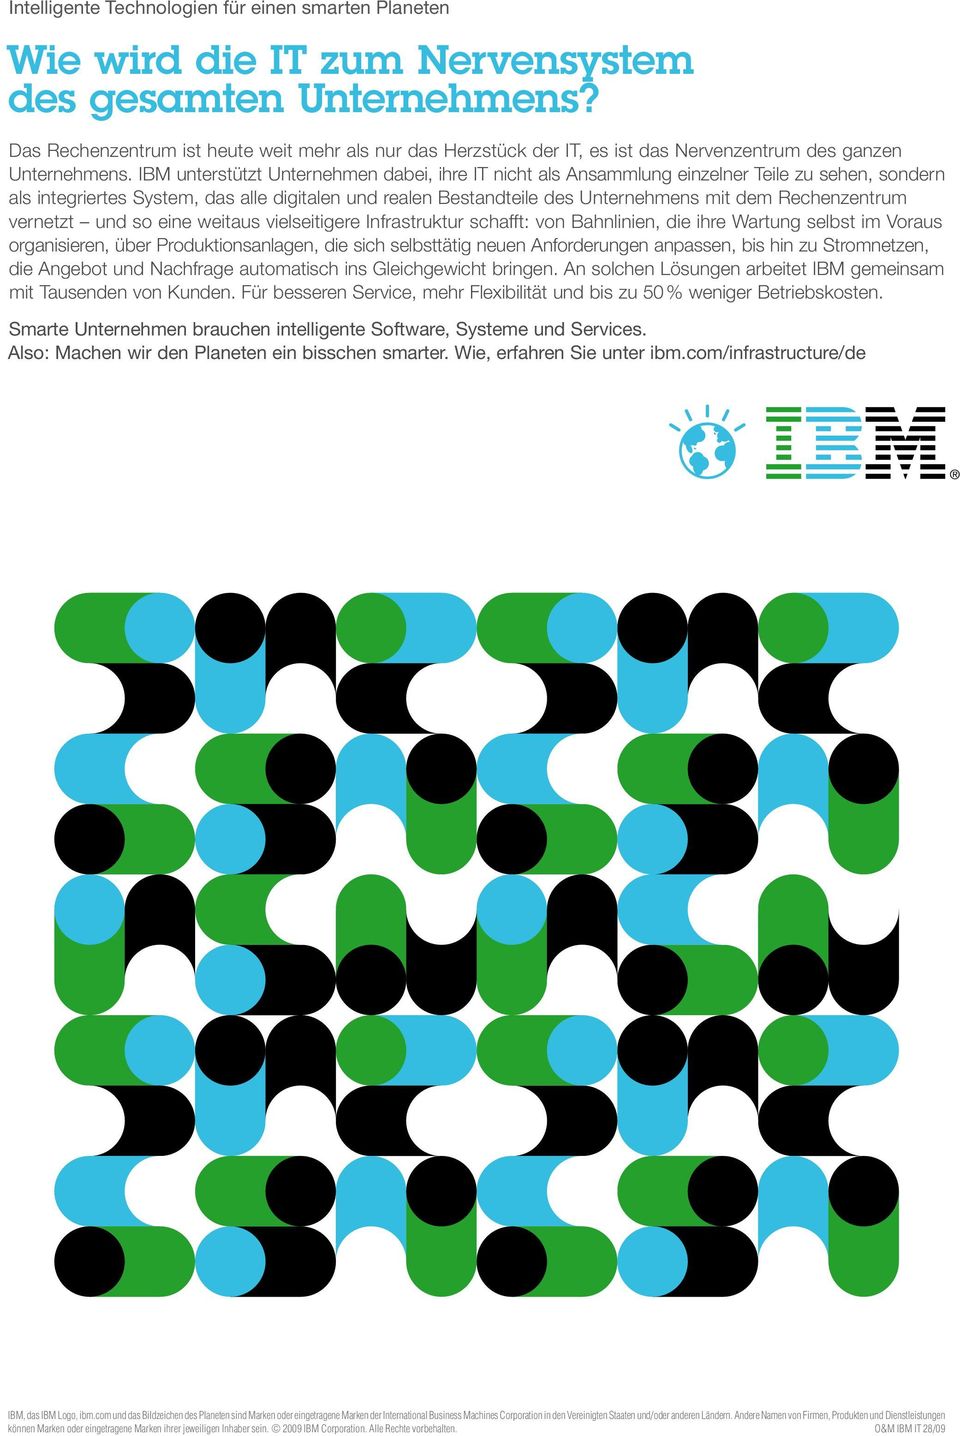 IBM unterstützt Unternehmen dabei, ihre IT nicht als Ansammlung einzelner Teile zu sehen, sondern als integriertes System, das alle digitalen und realen Bestandteile des Unternehmens mit dem